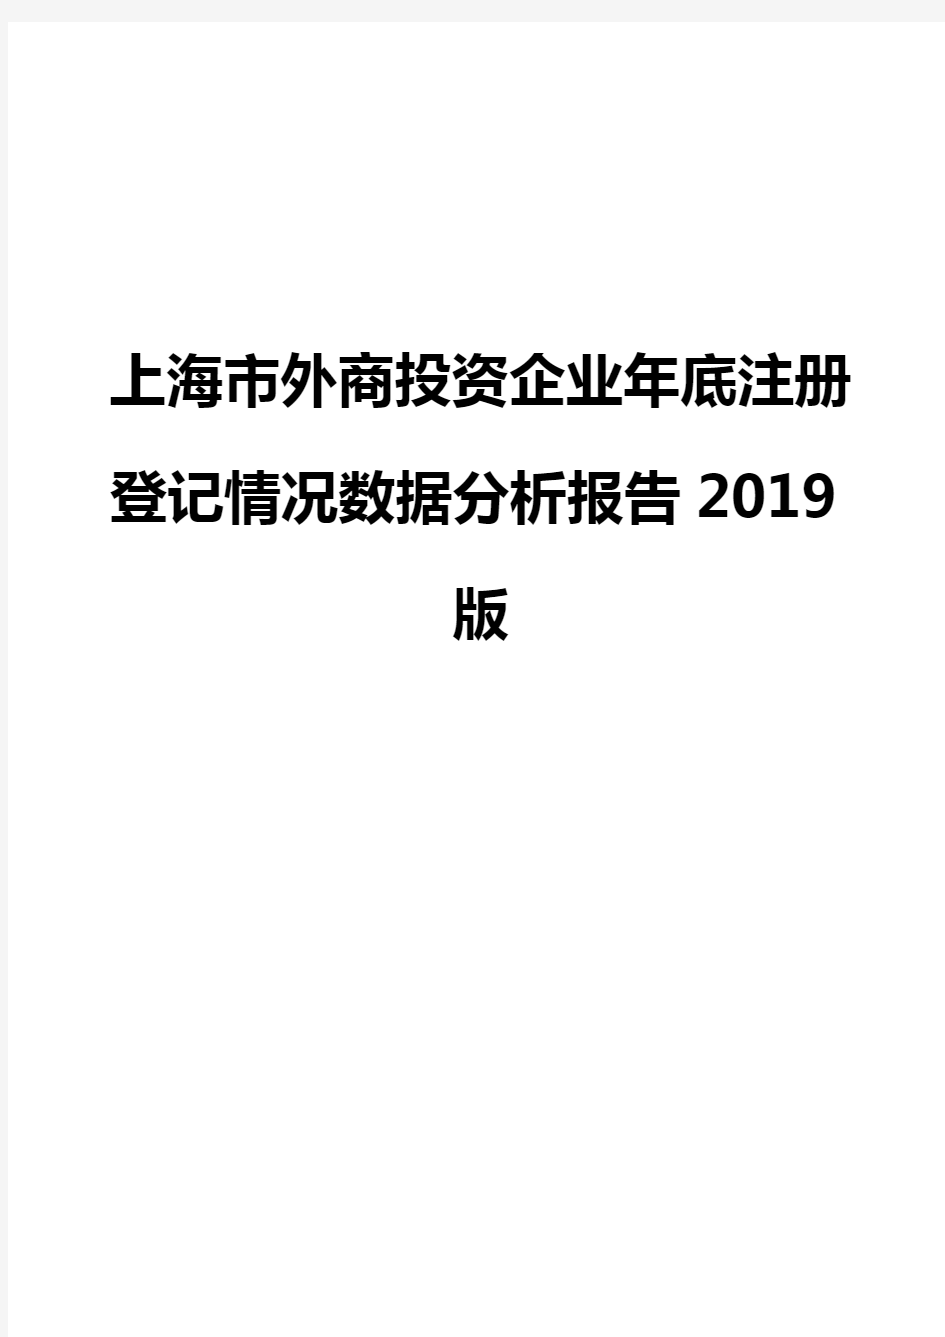 上海市外商投资企业年底注册登记情况数据分析报告2019版